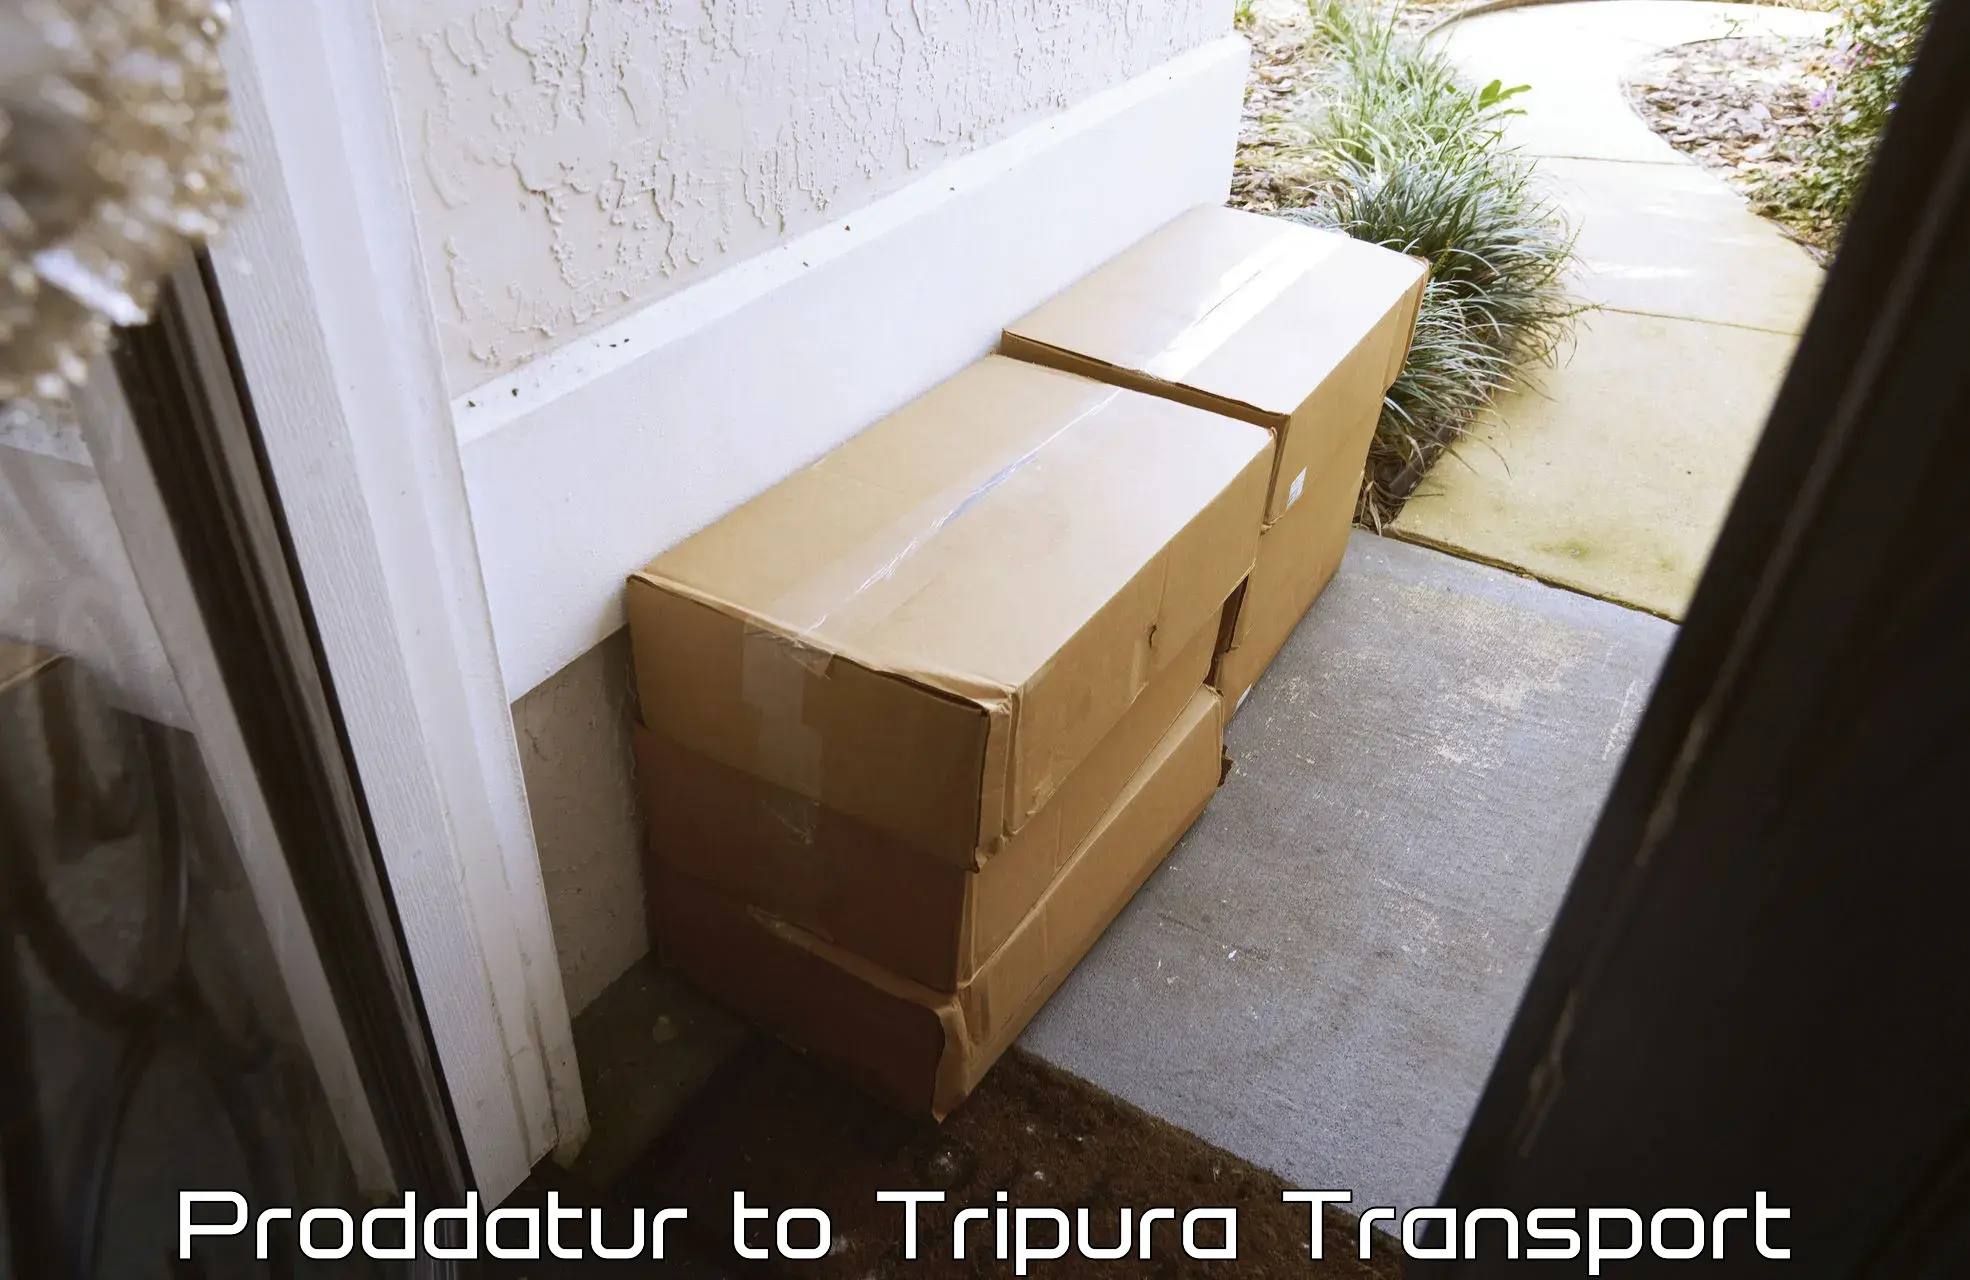 Door to door transport services Proddatur to Udaipur Tripura